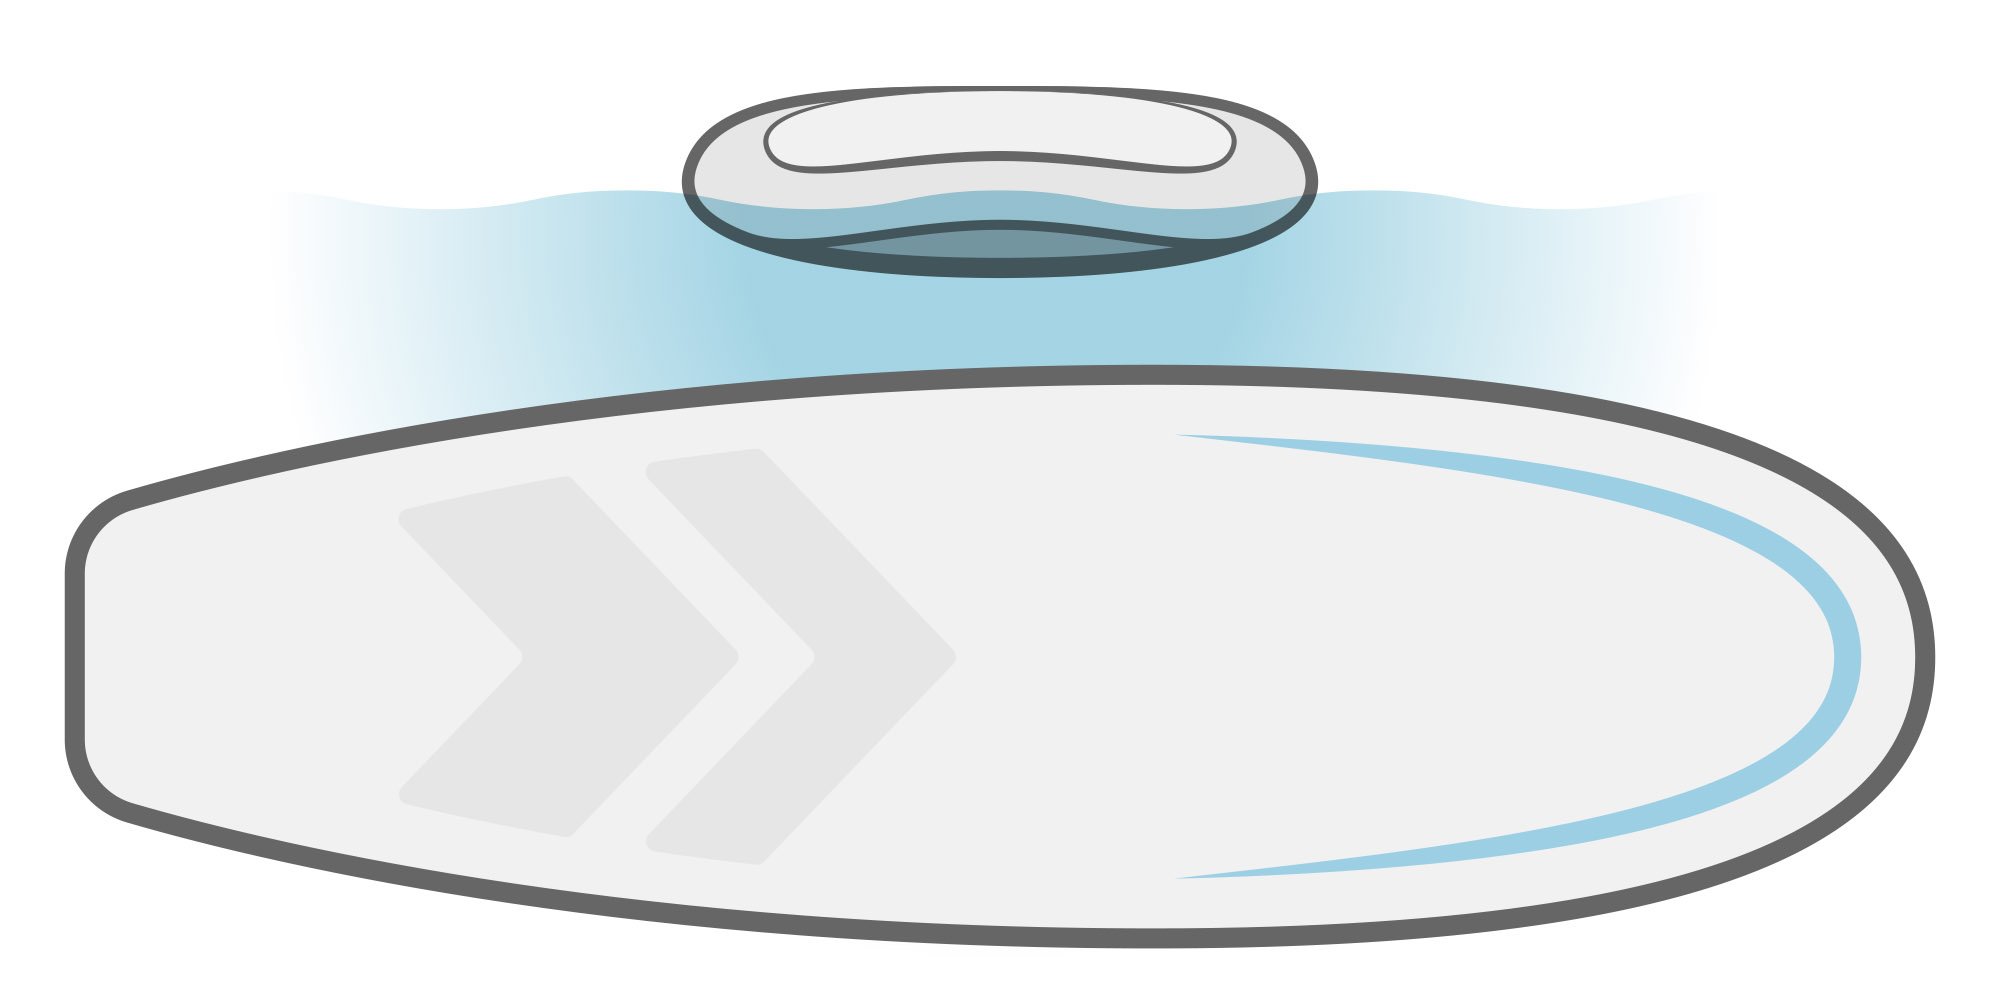 Illustration eines SUP-Boards mit rundlichem Rumpf.